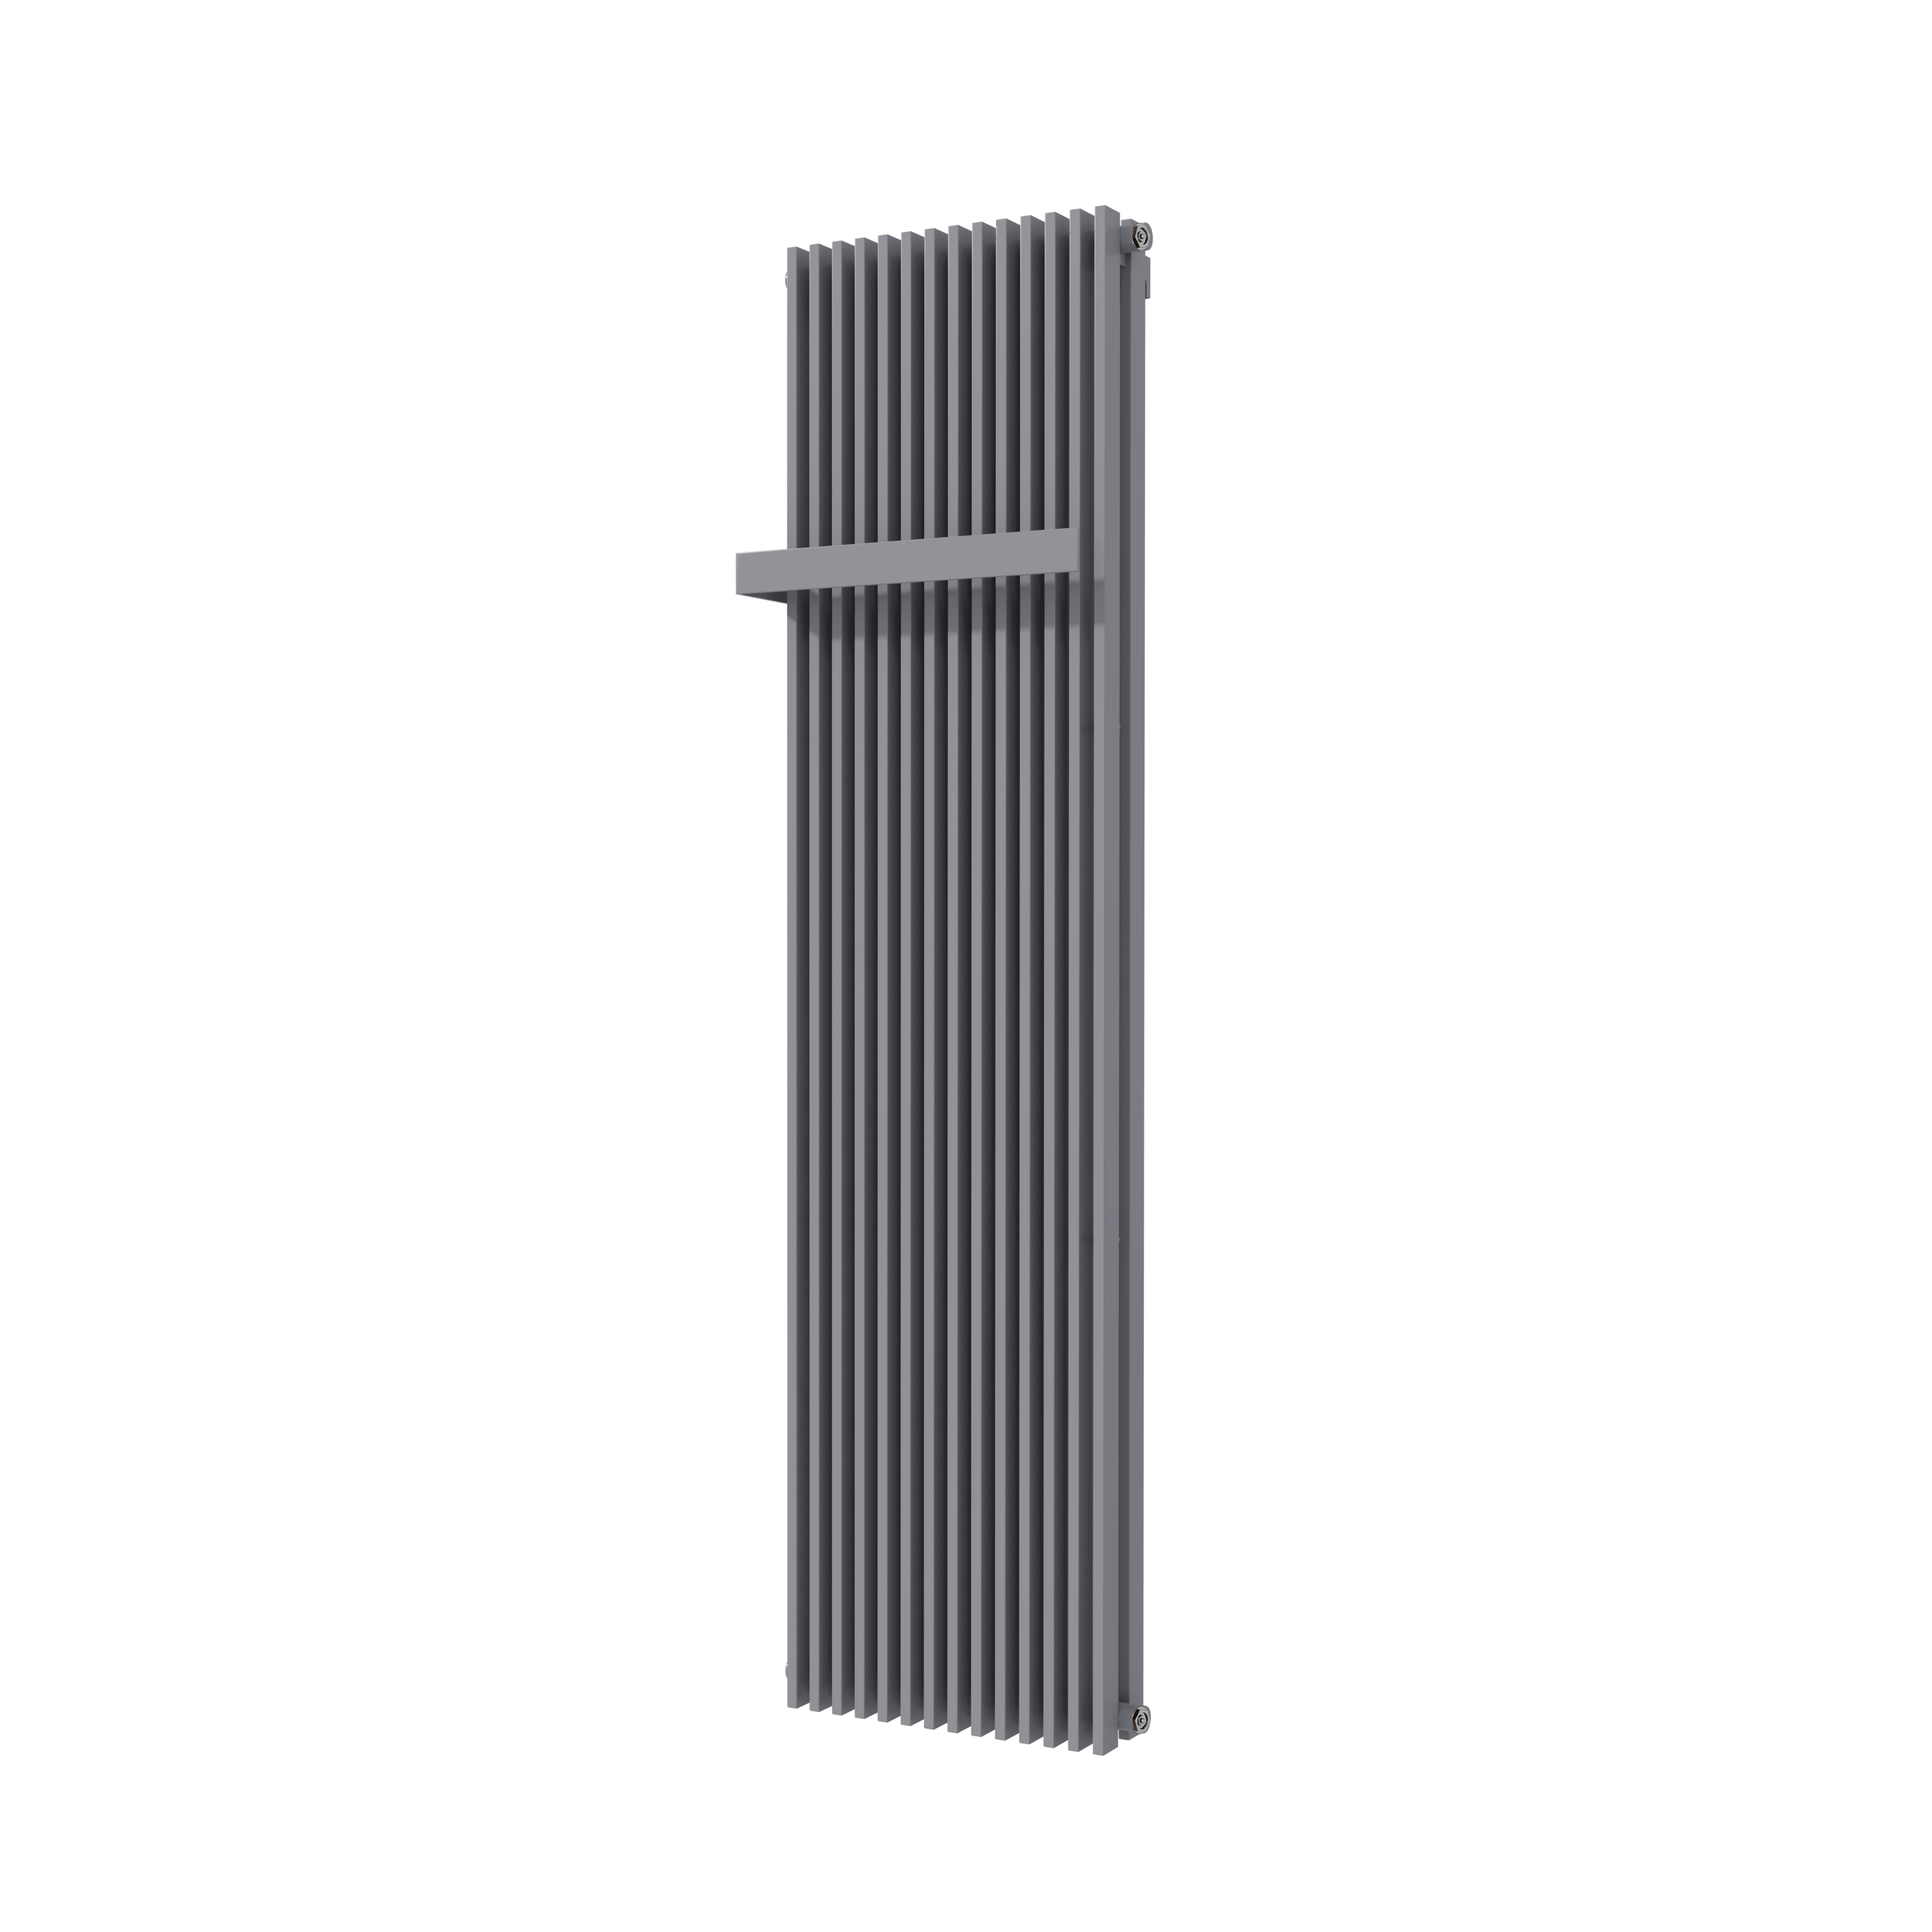 Vipera Corrason dubbele badkamerradiator 50 x 180 cm centrale verwarming antraciet grijs zij- en middenaansluiting 2.857W